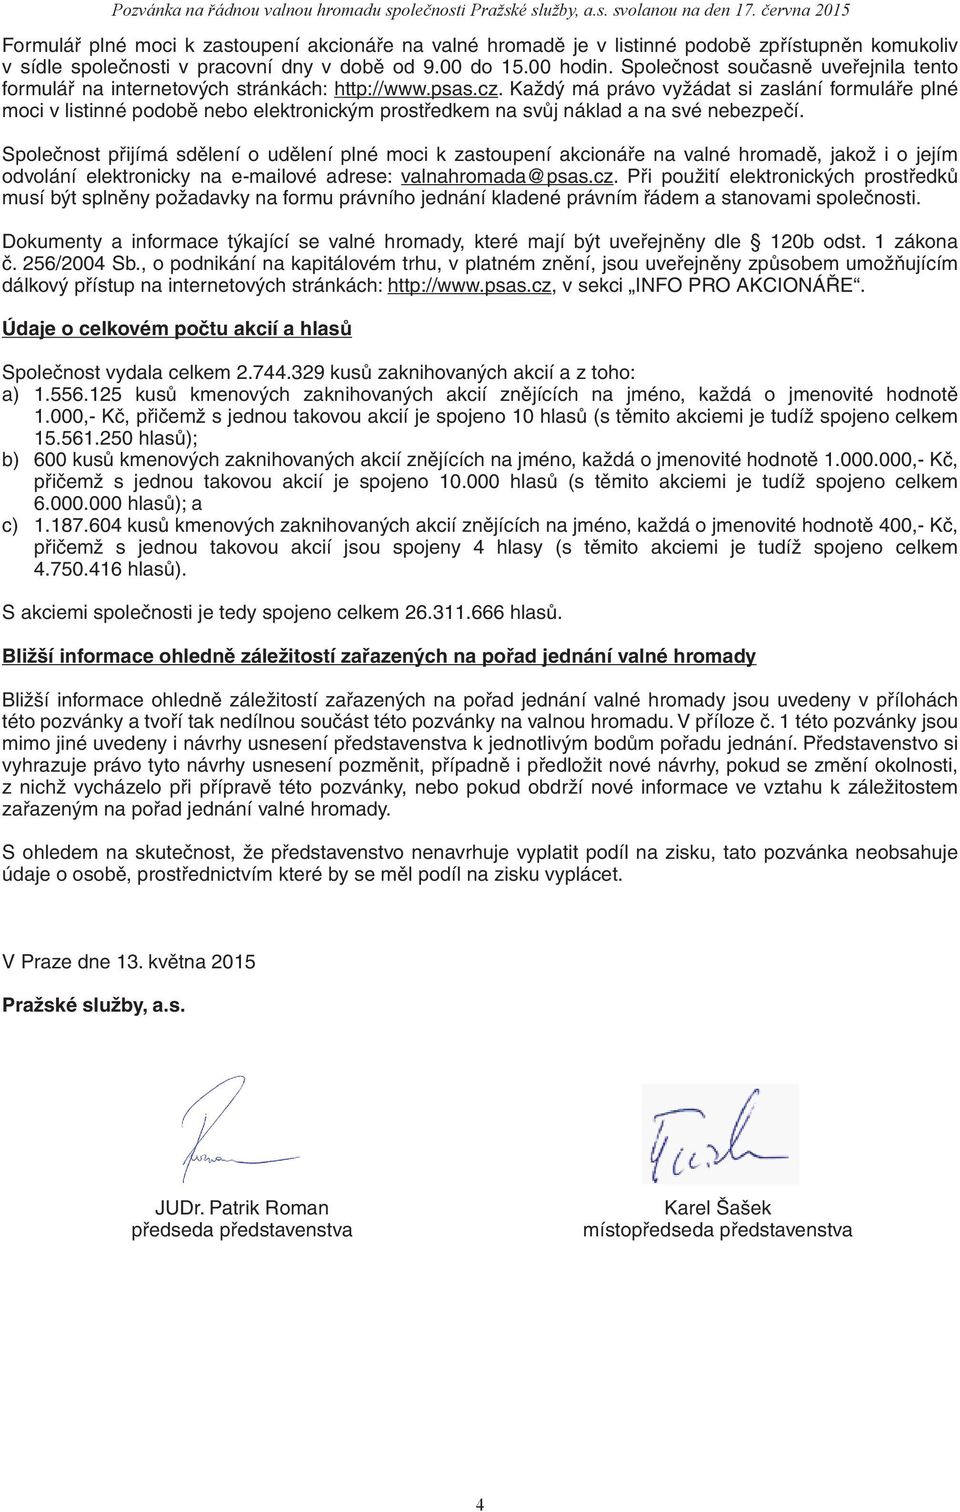 Společnost současně uveřejnila tento formulář na internetových stránkách: http://www.psas.cz.